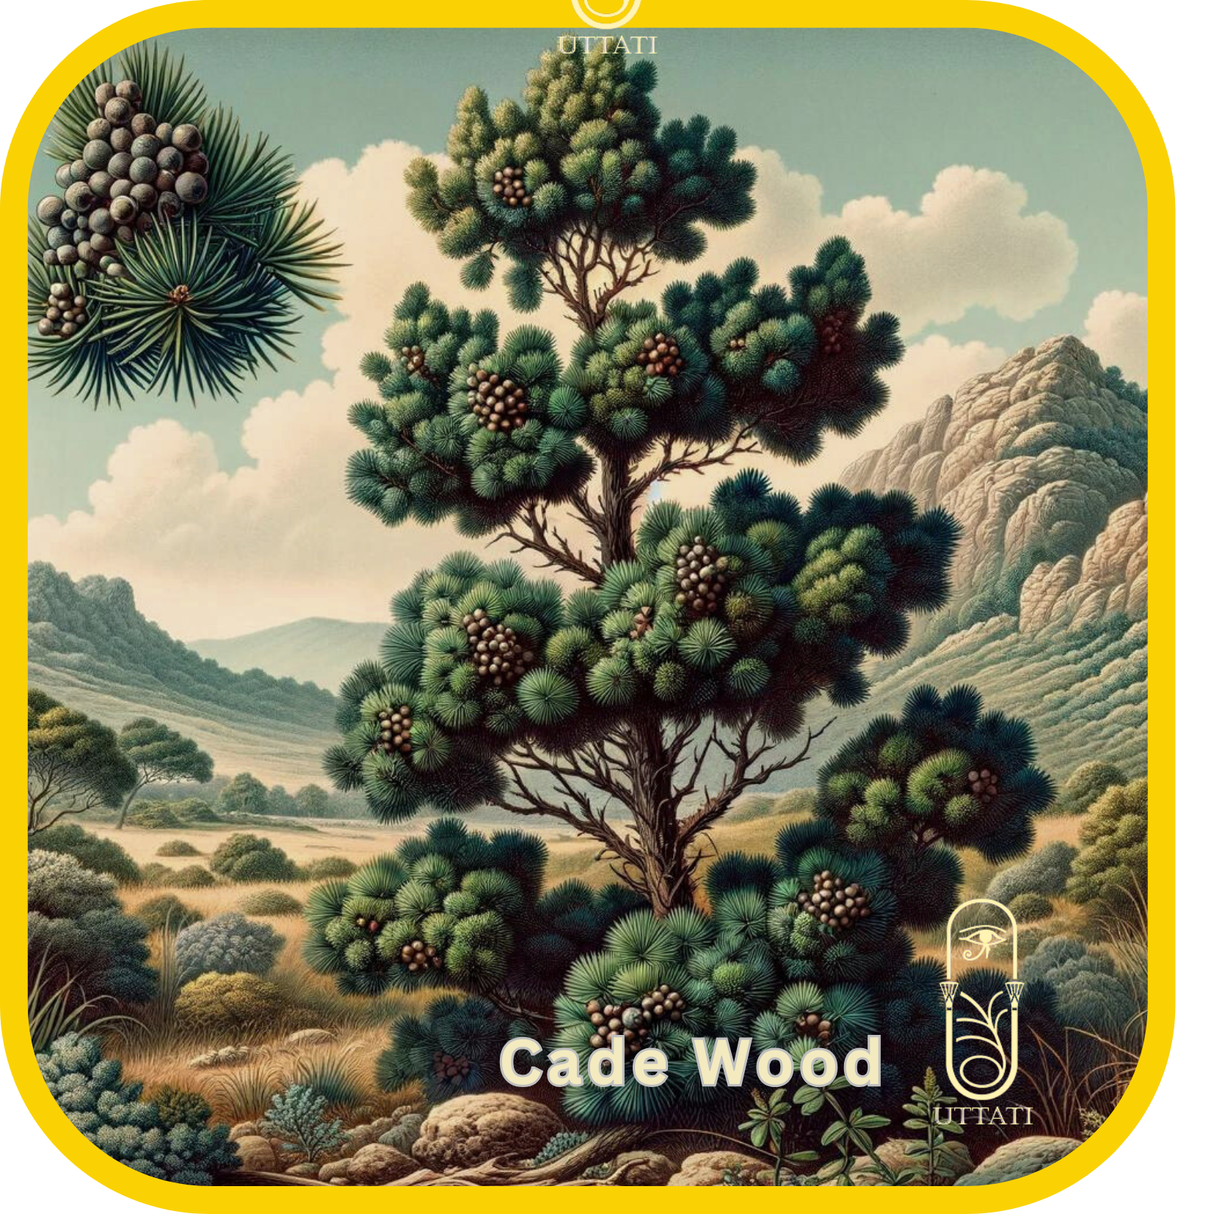 Cade Wood